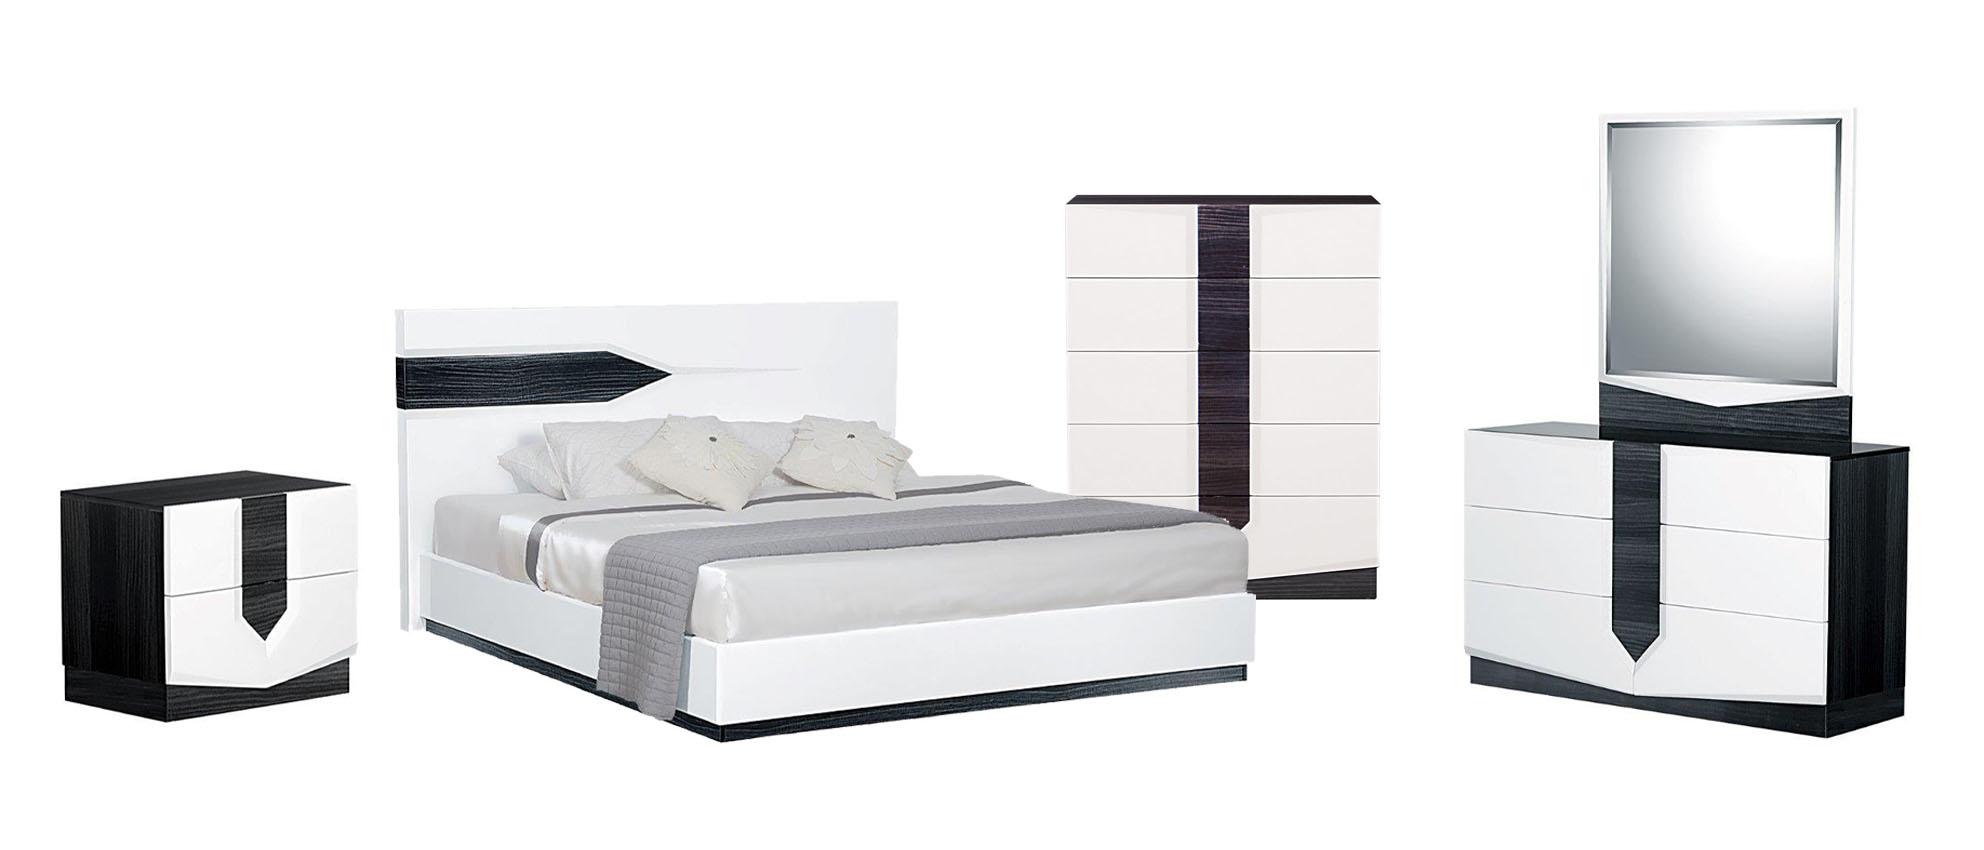 Contemporary Platform Bedroom Set HUDSON HUDSON-KB-Set-5 in White, Gray 